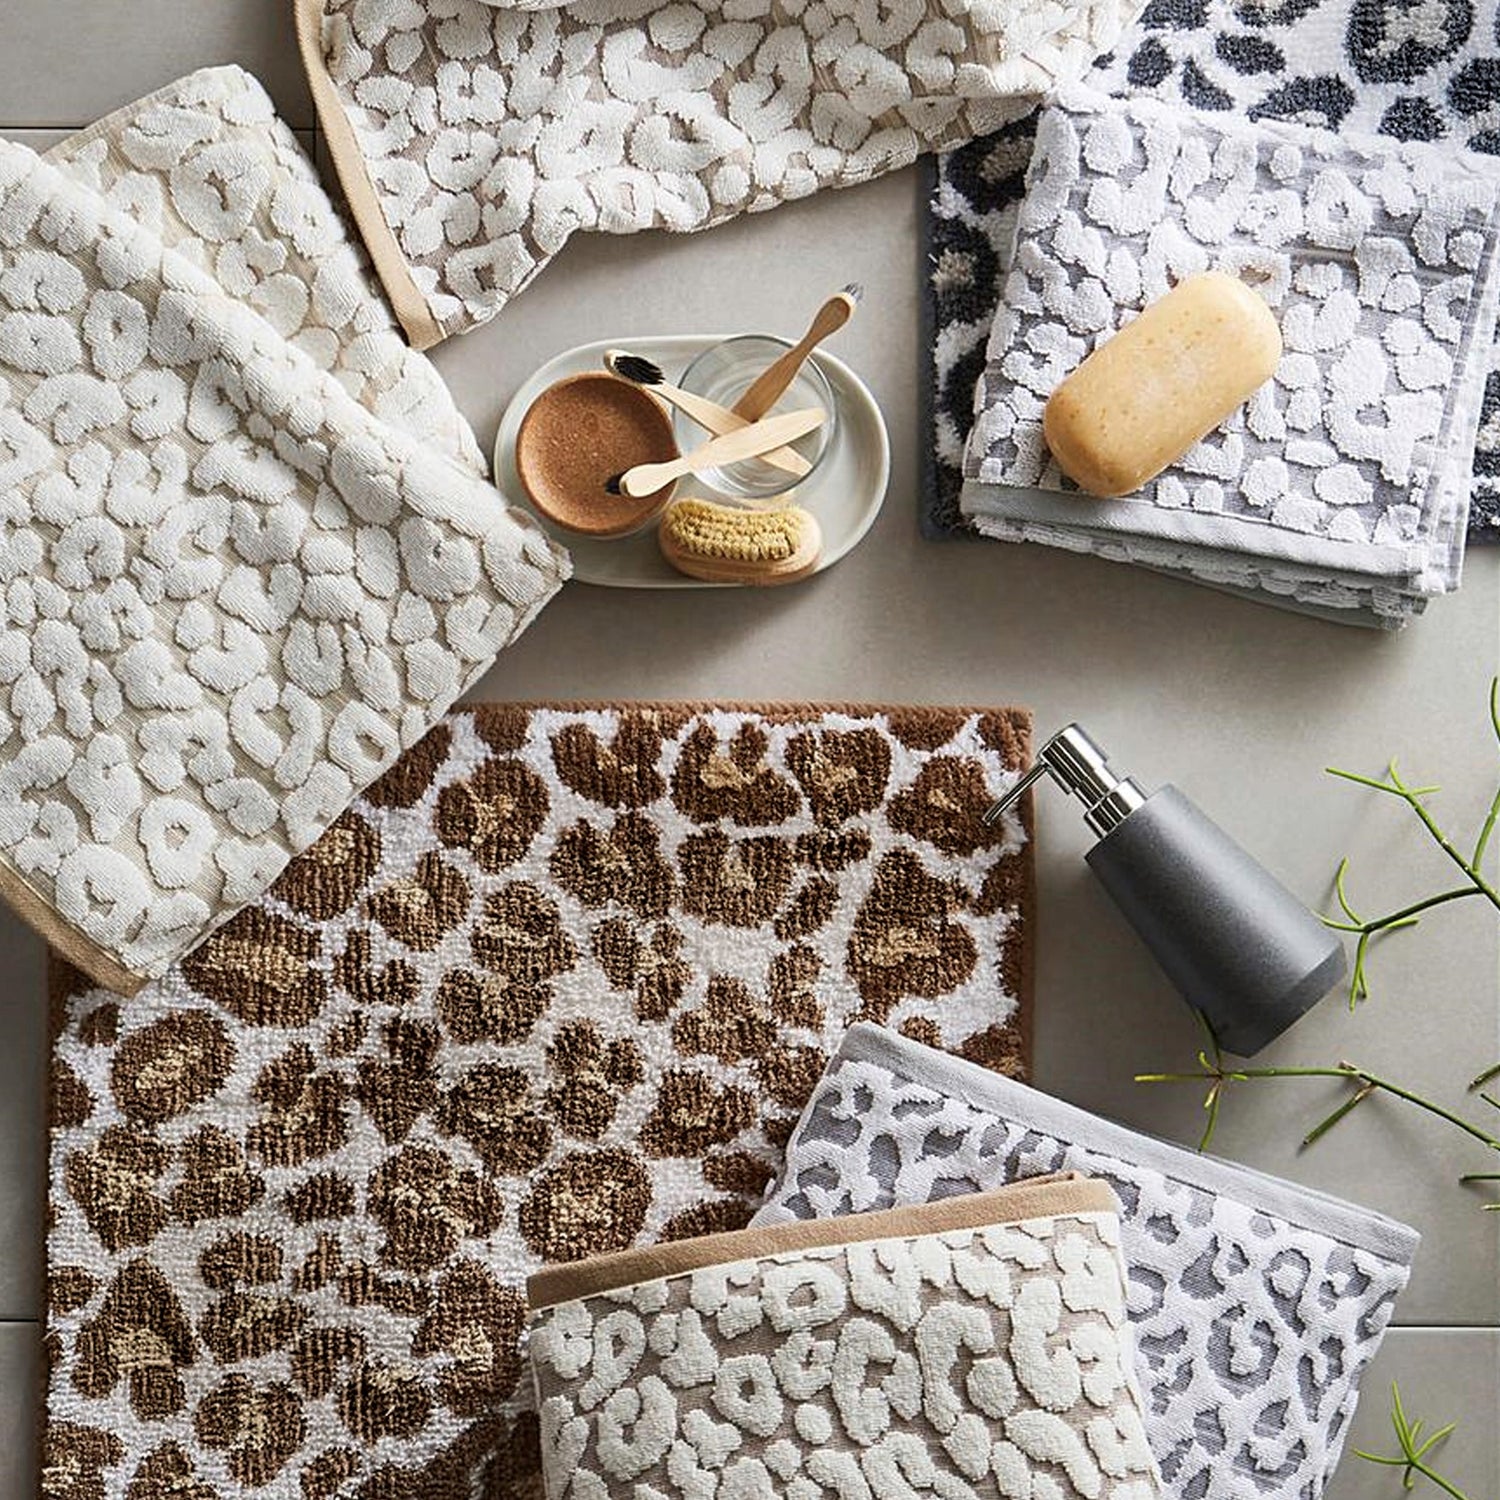 Leopard print bathroom towels and mats